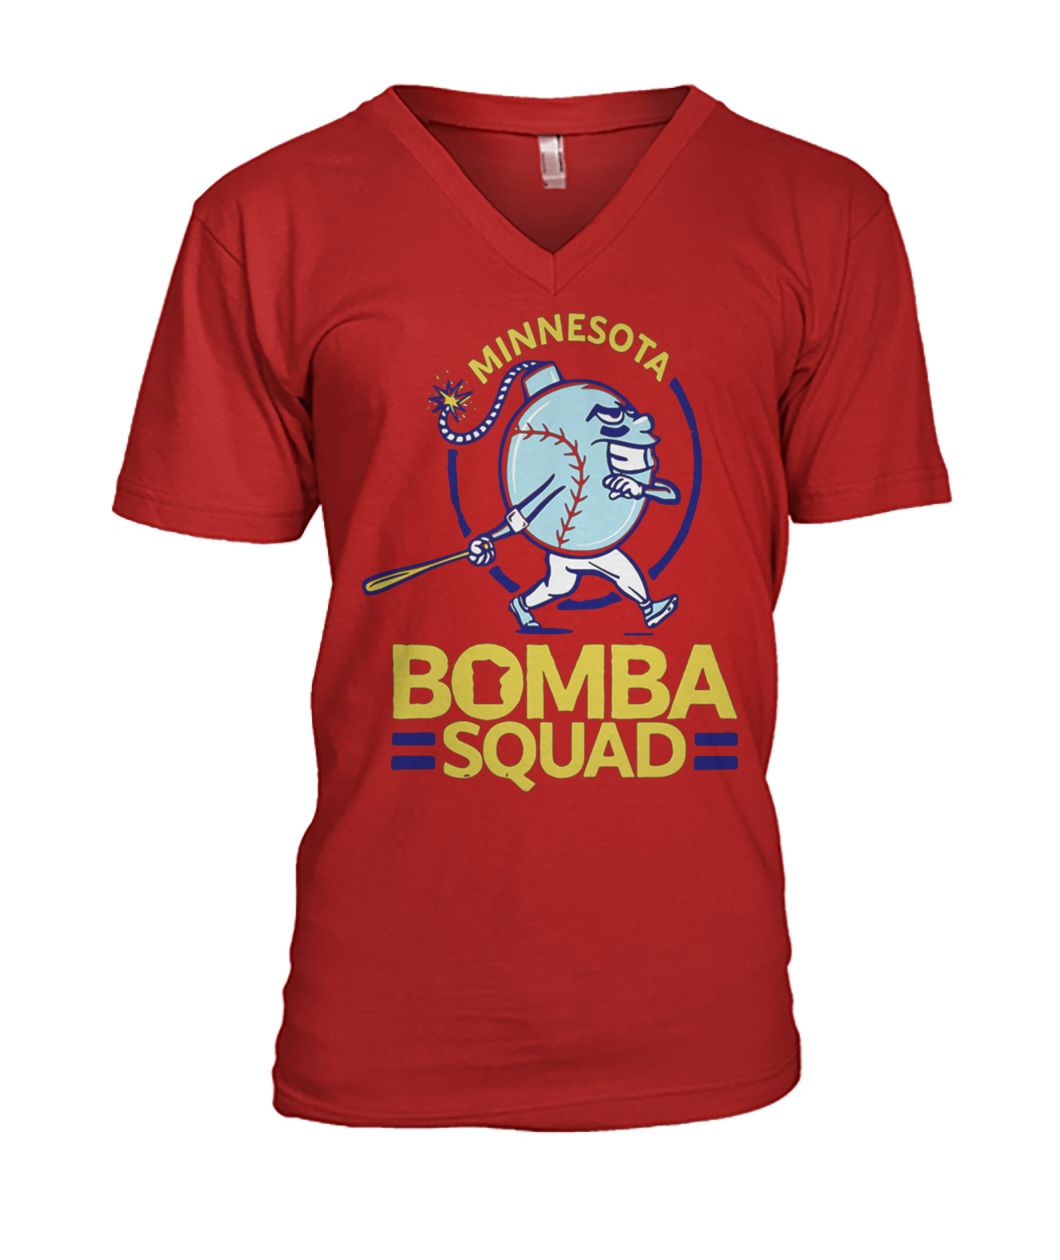 Minnesota bomba squad mens v-neck